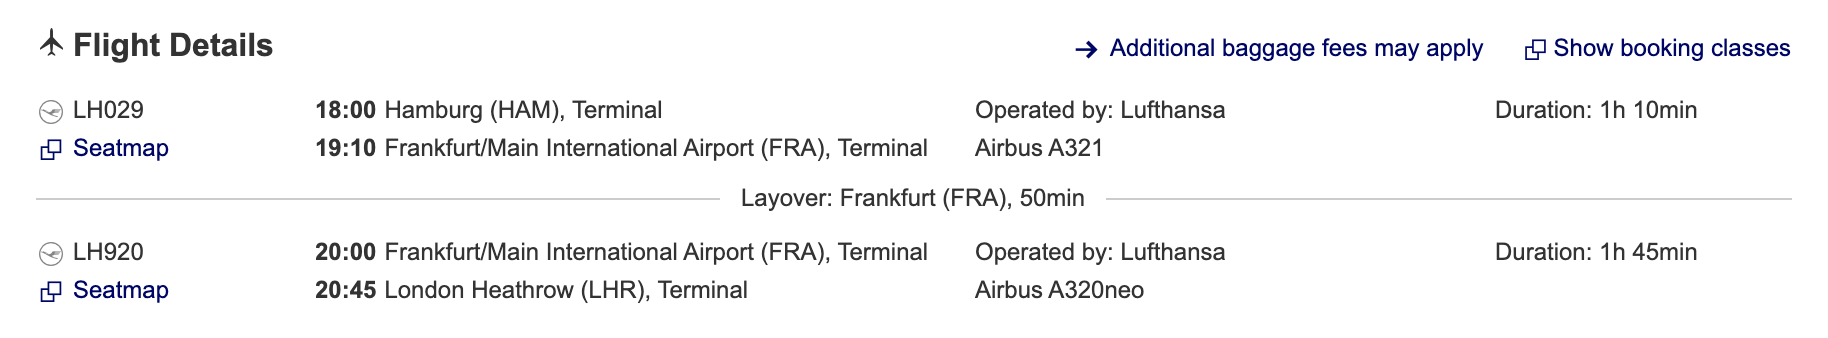 Lufthansa, Train Service, Feeder Services